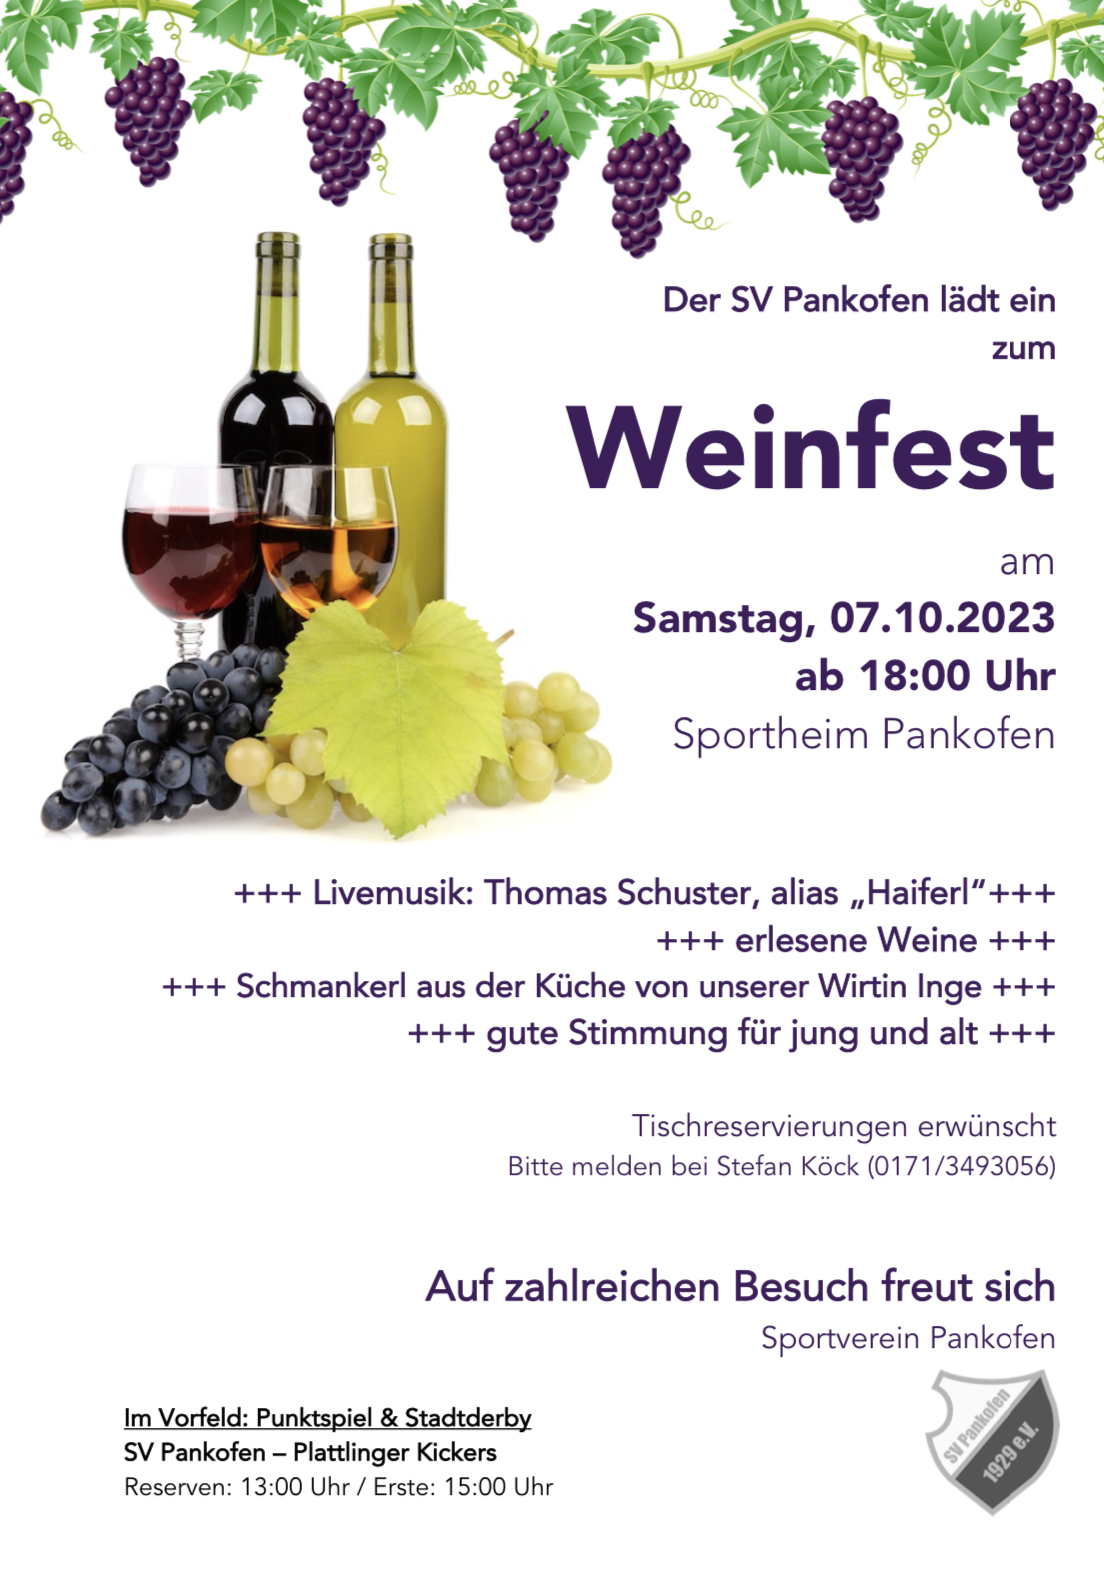 Weinfest des SV Pankofen